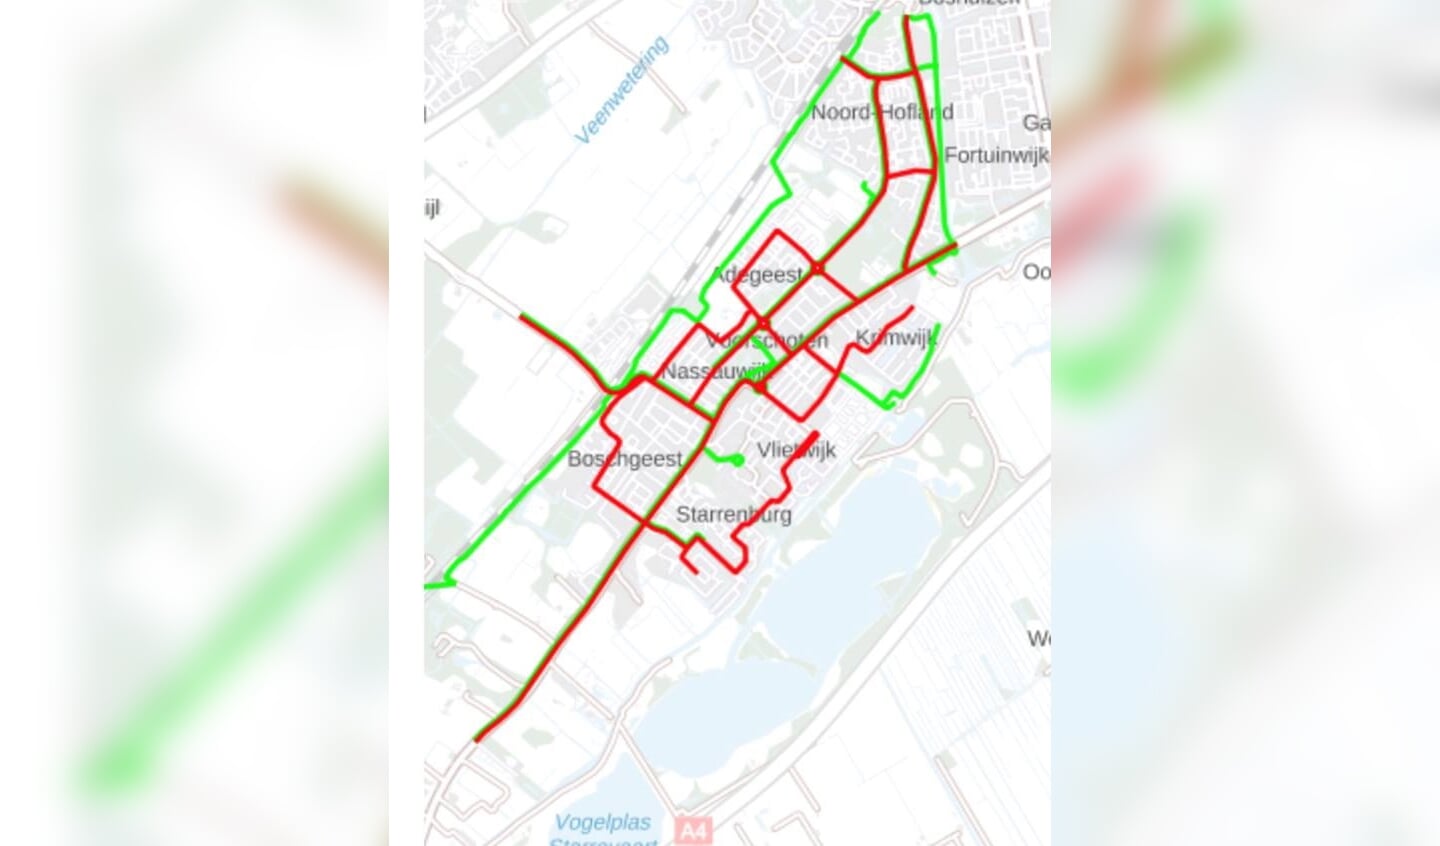 Strooiroutes: in het rood: de hoofdroutes, in het groen: de fietsroutes